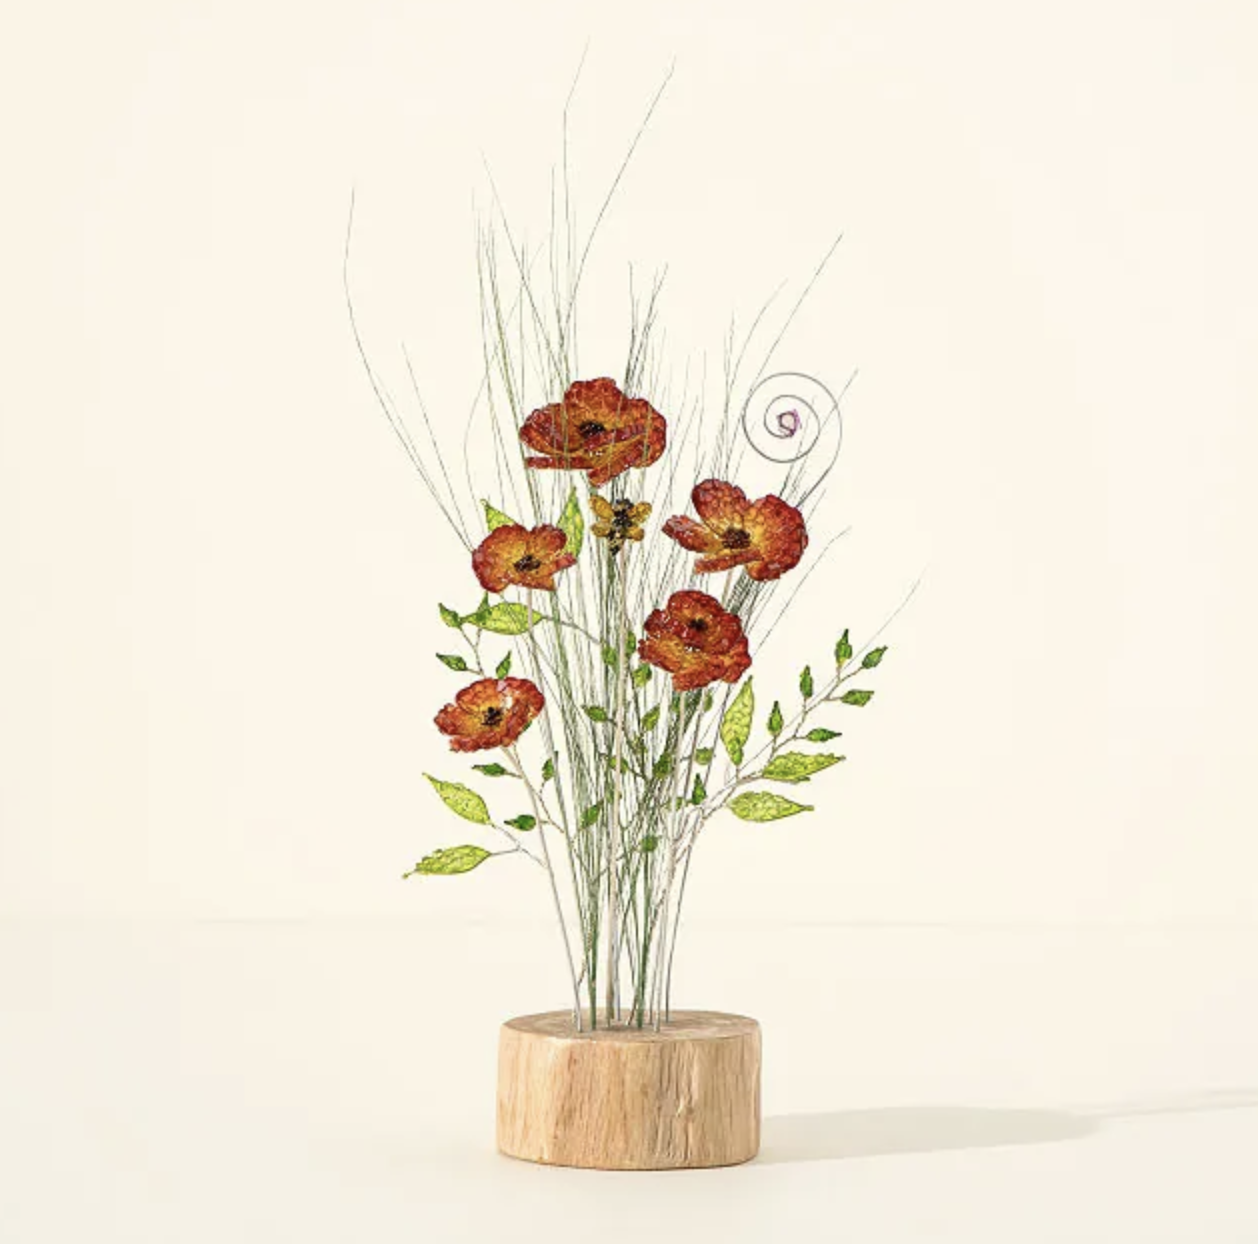 Birth Month Wildflower Bouquet: August - Poppy